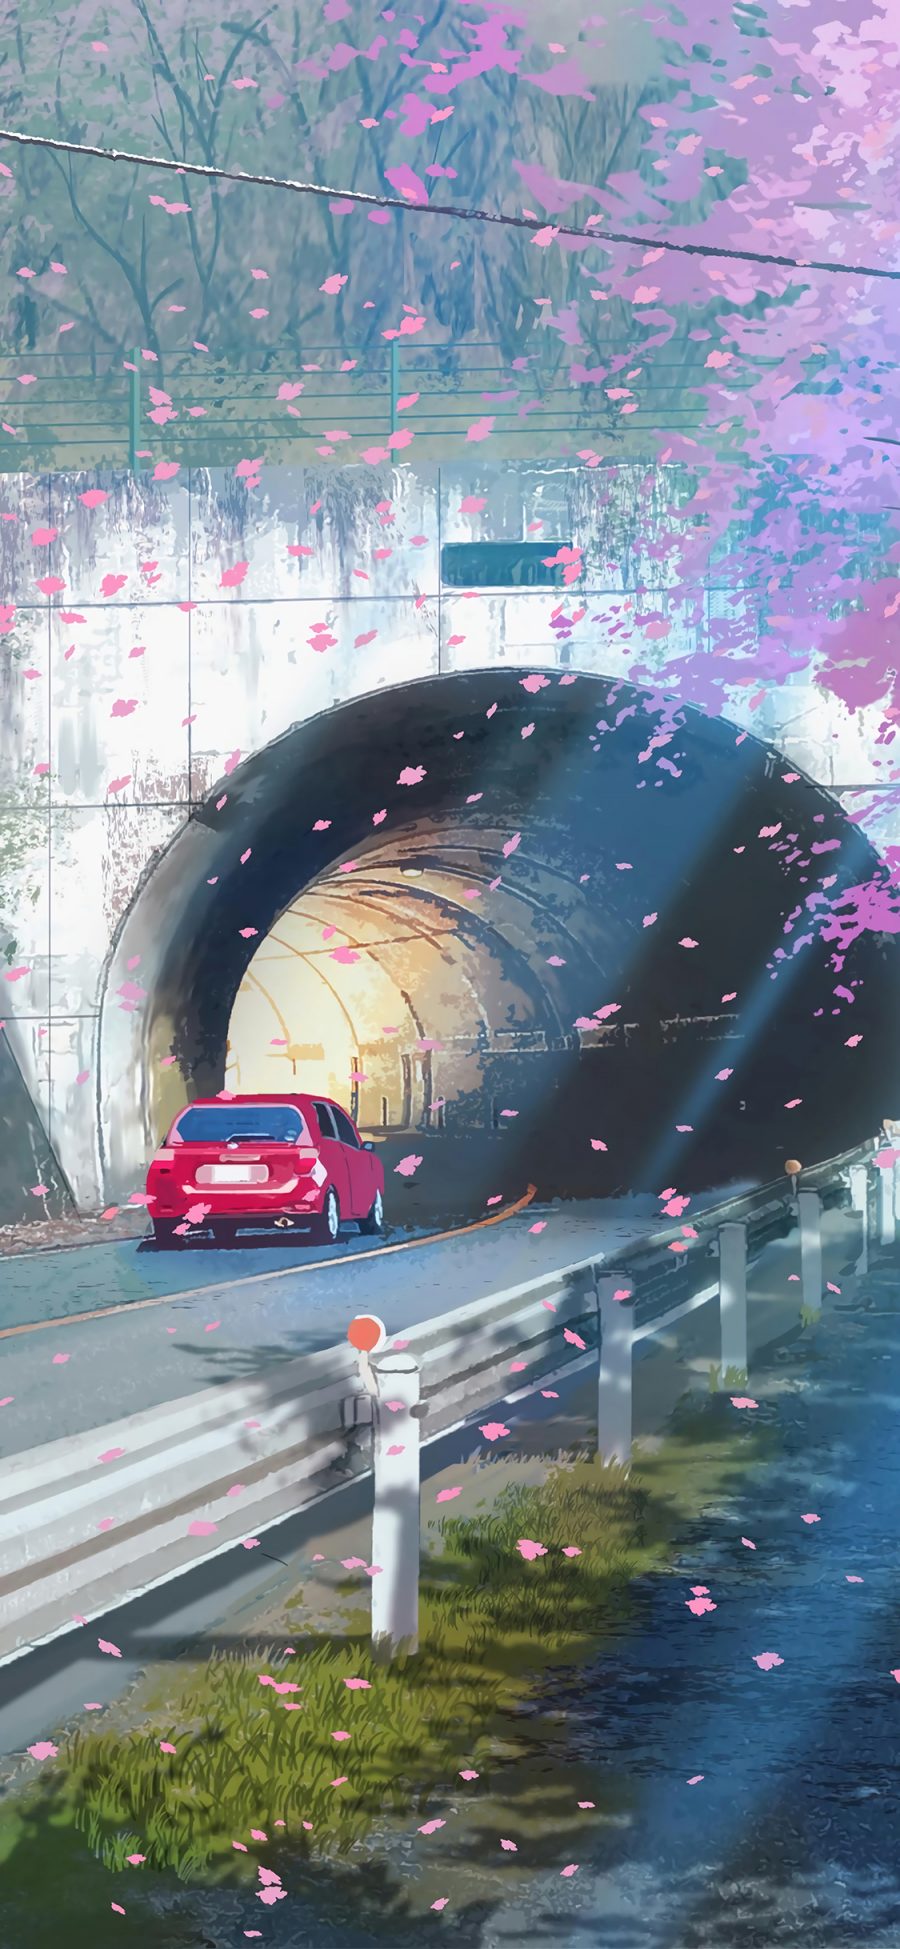 [2436×1125]日漫 场景 桥洞 汽车 樱花 苹果手机动漫壁纸图片